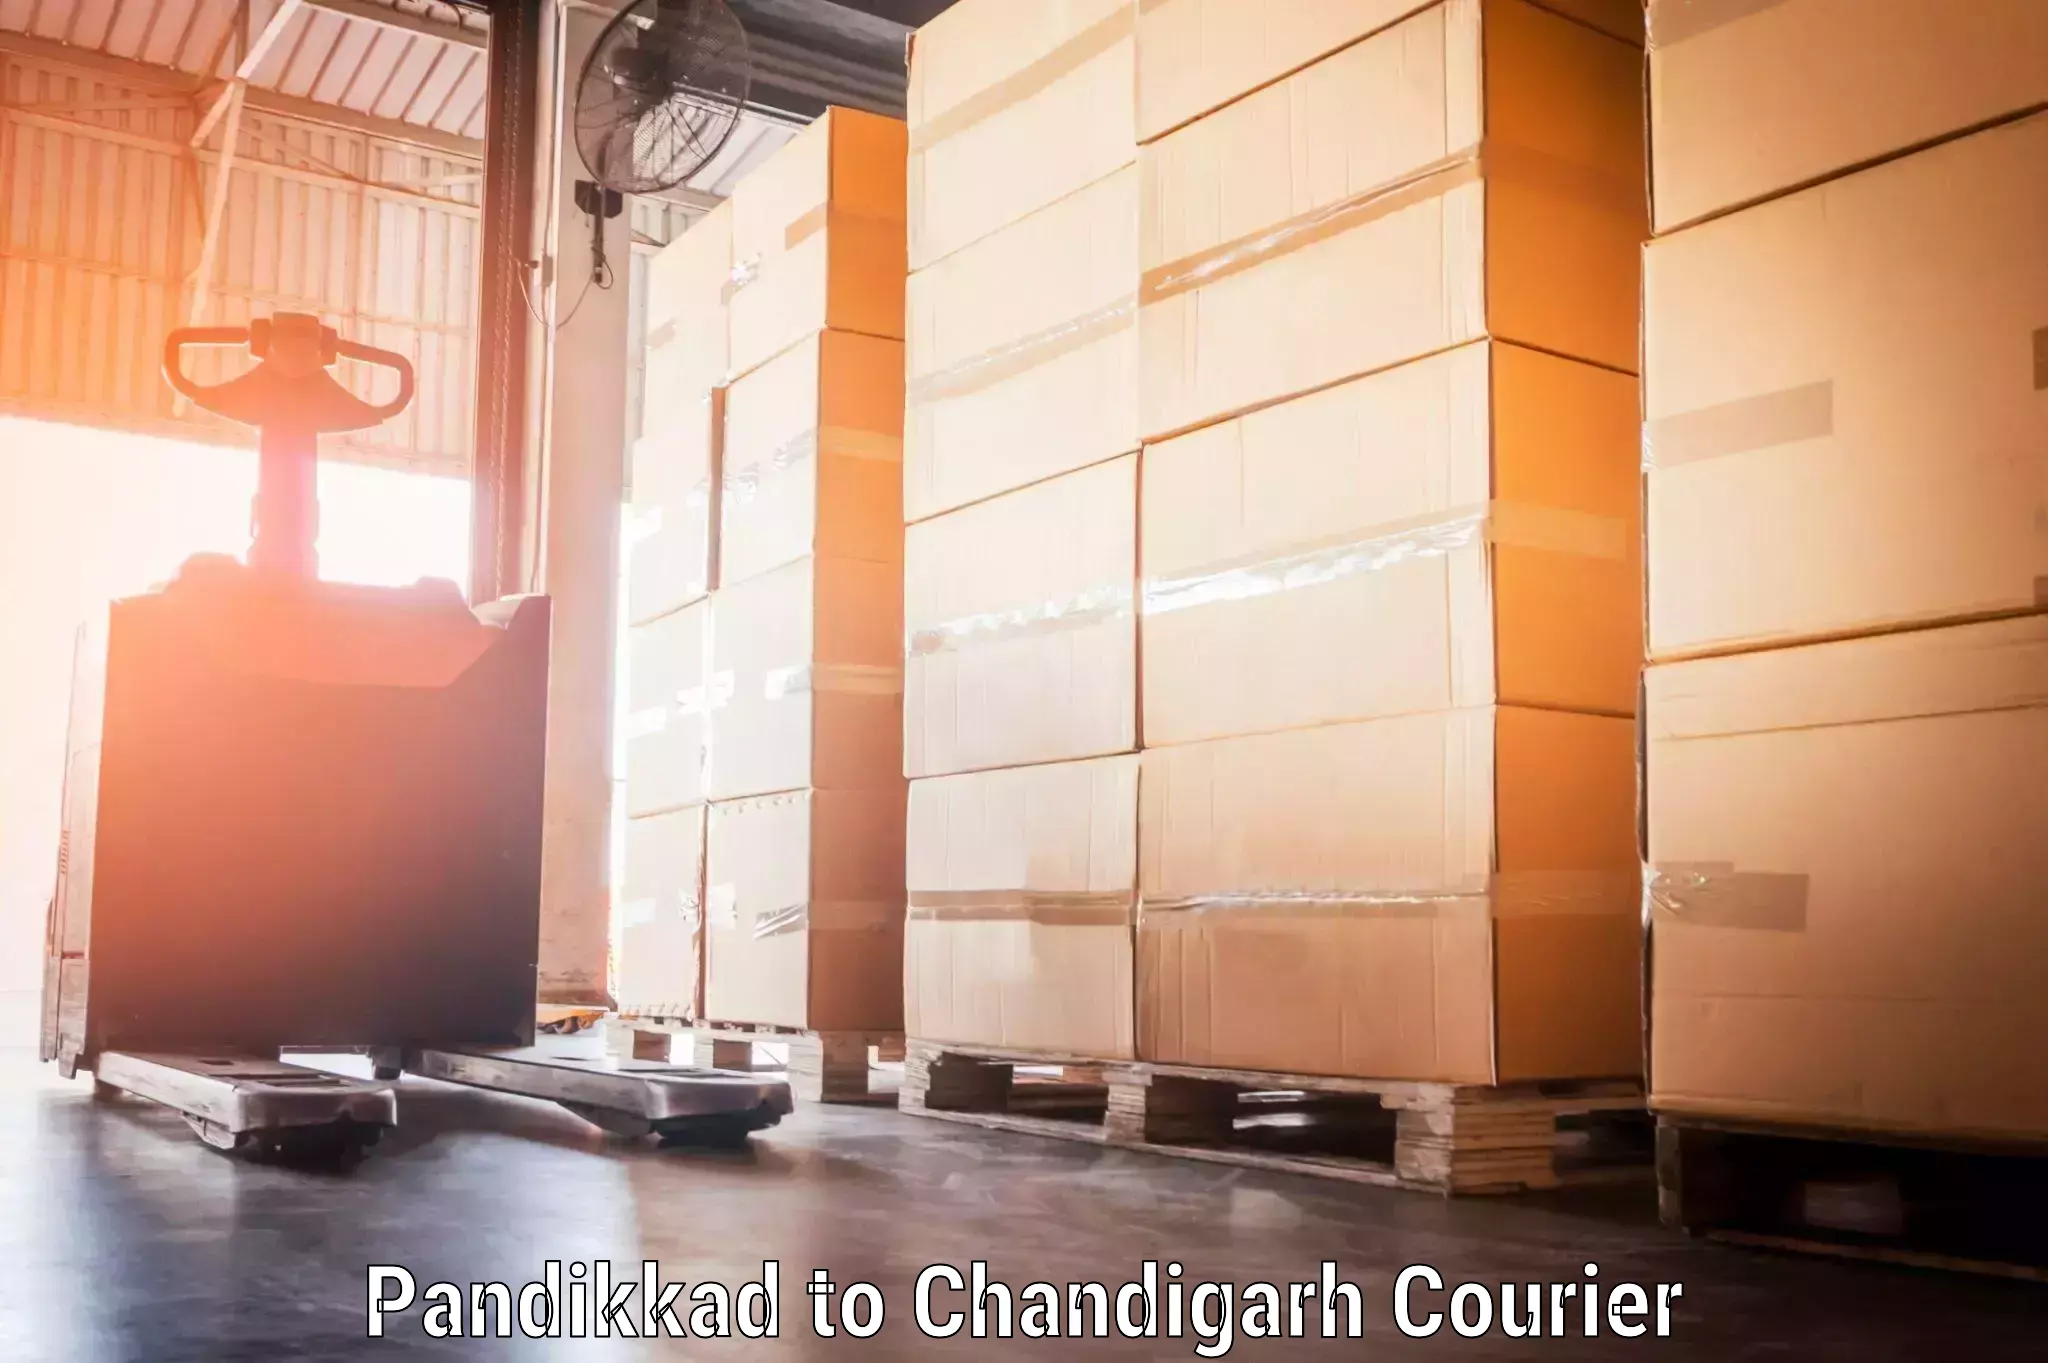 Electronic items luggage shipping Pandikkad to Chandigarh